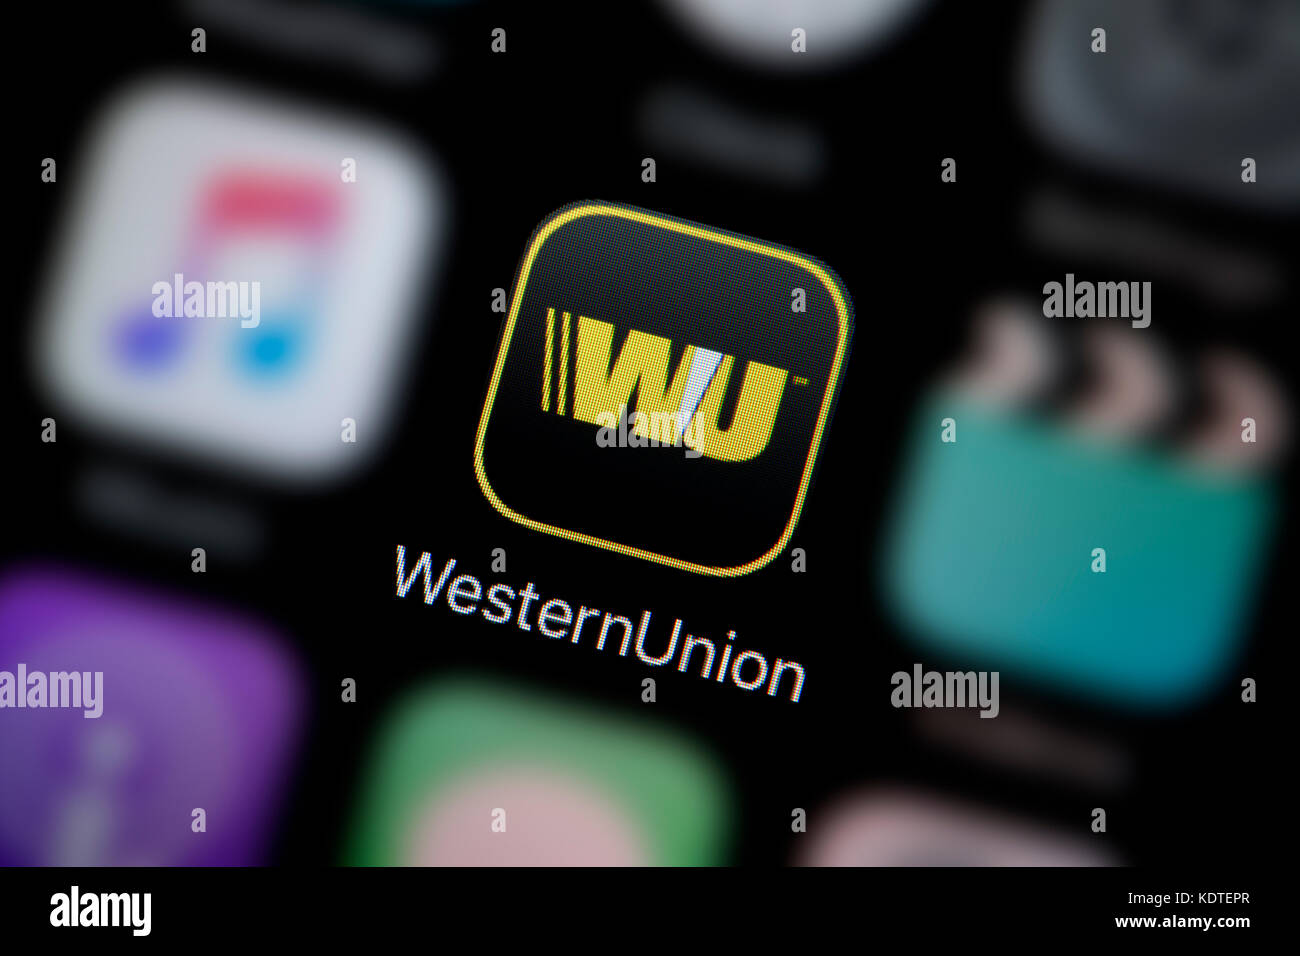 Union App Stockfotos und -bilder Kaufen - Alamy